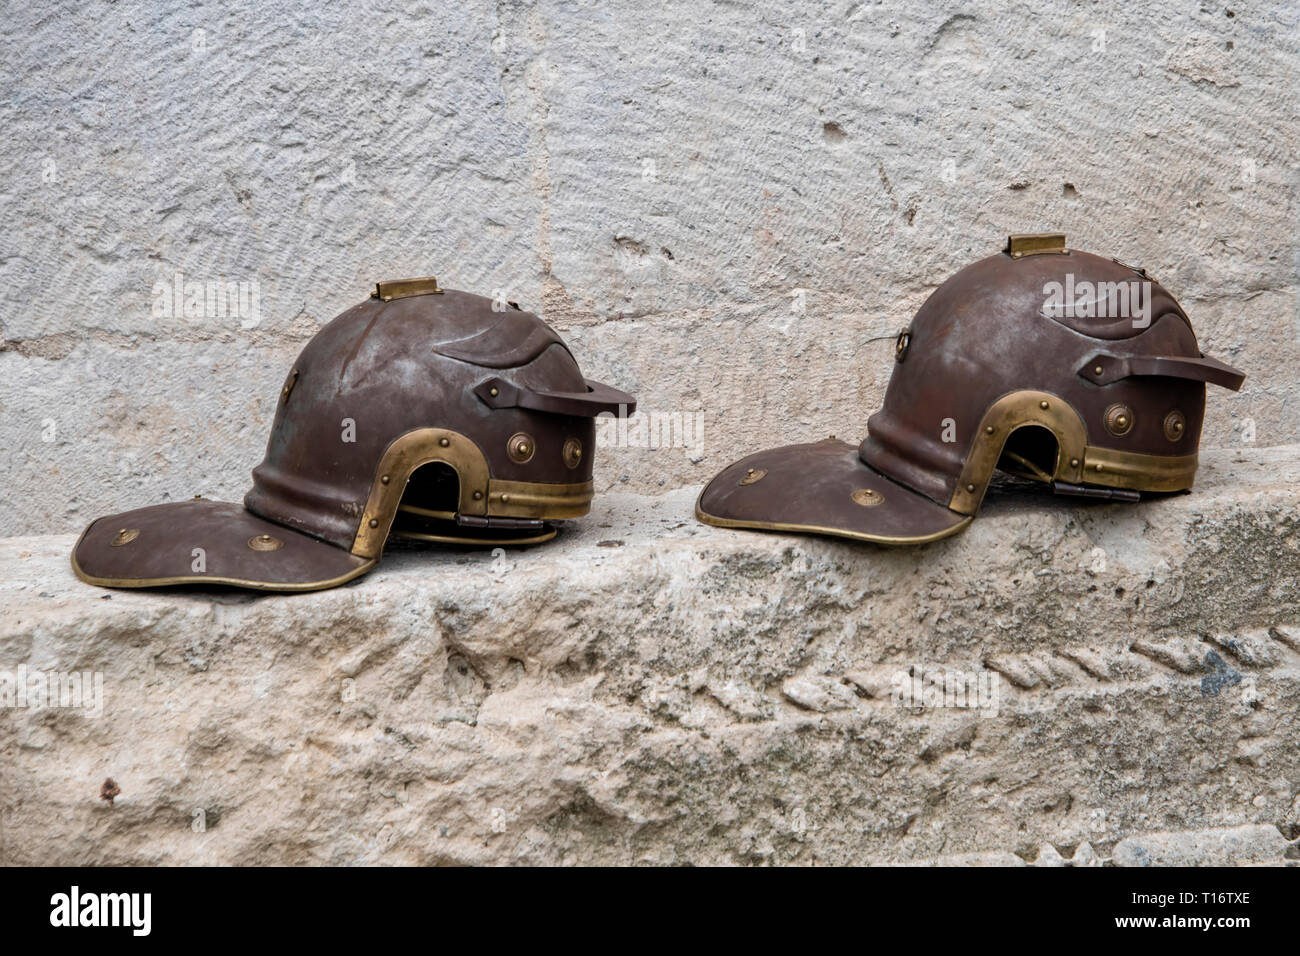 La Croatie, Split - Juin 2018 : Réplique les légionnaires dans le style des casques gaulois, utilisé par de reconstitution historique dans l'endroit de Dioclétien Banque D'Images